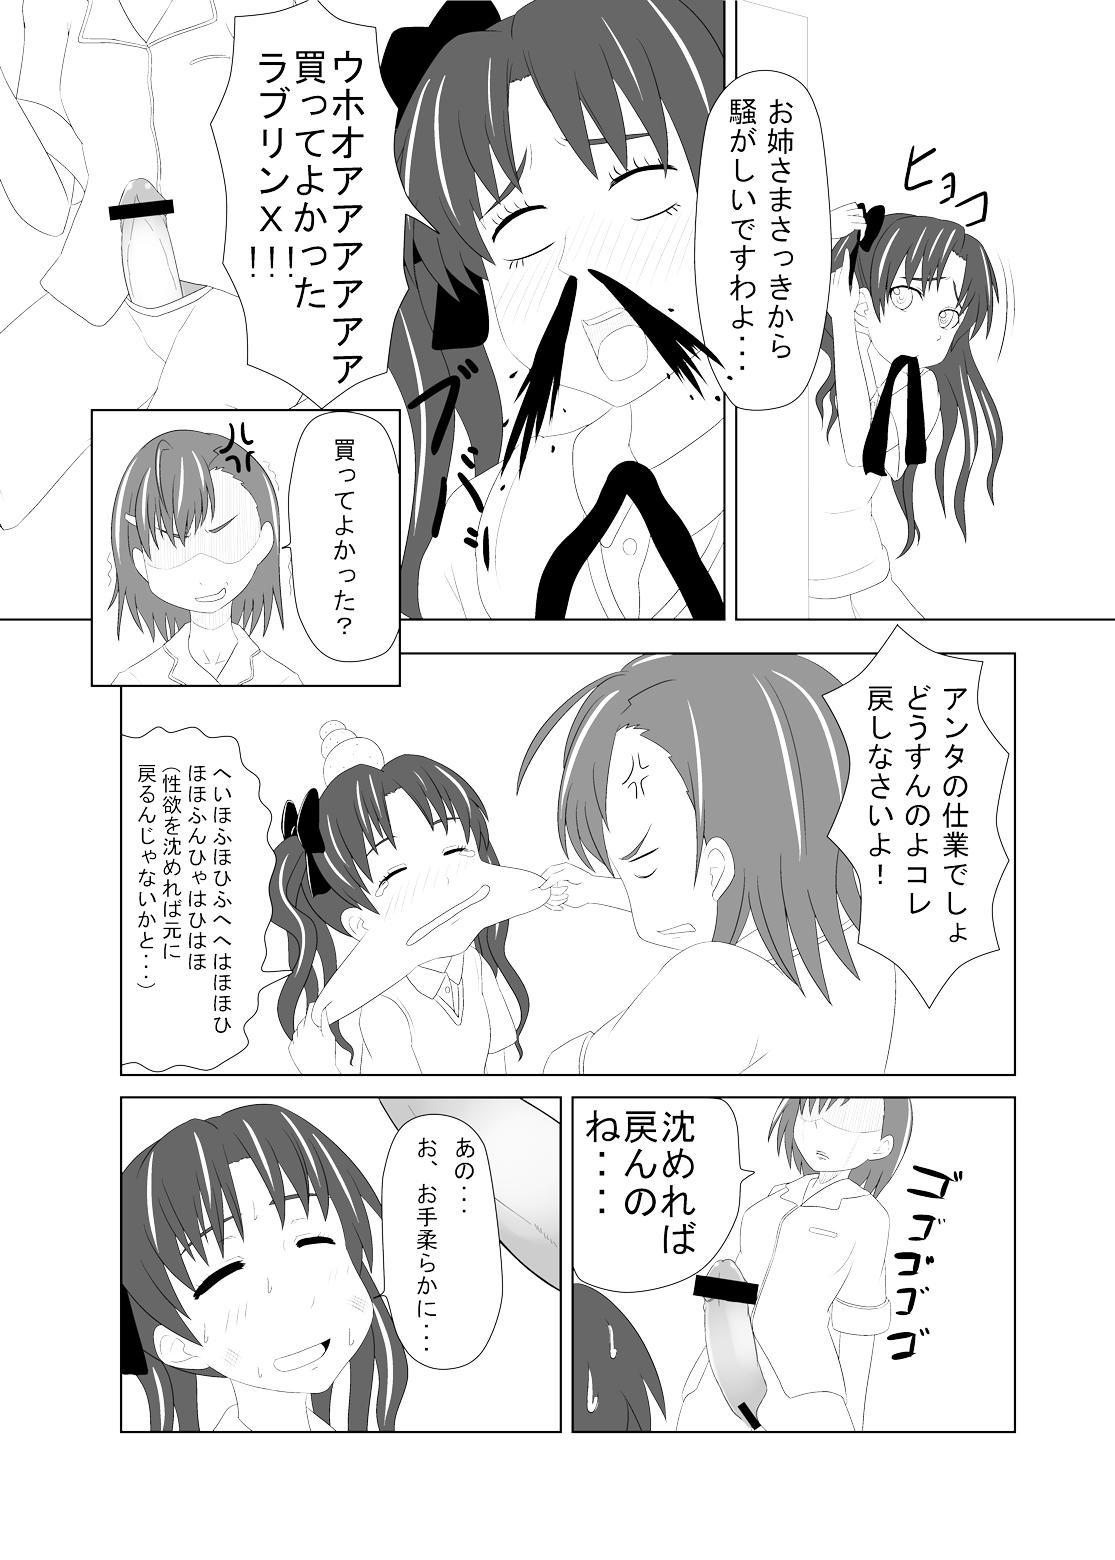 Blowjobs Toaru Fuuki iin no Manabi Yori - Toaru kagaku no railgun Guyonshemale - Page 8